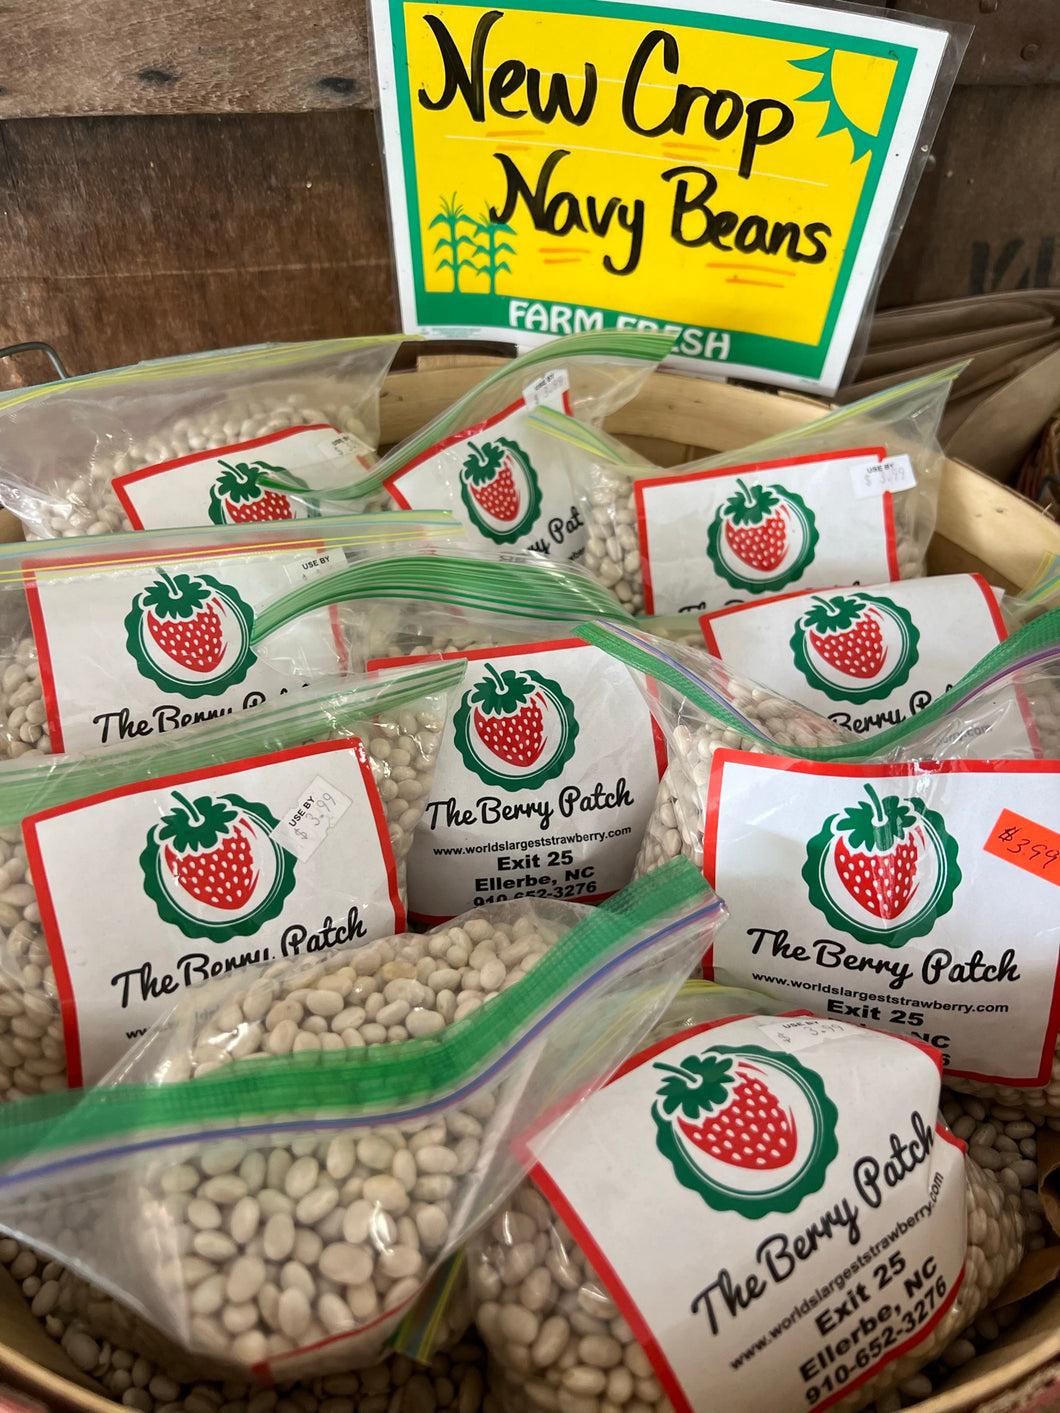 BP new crop navy beans